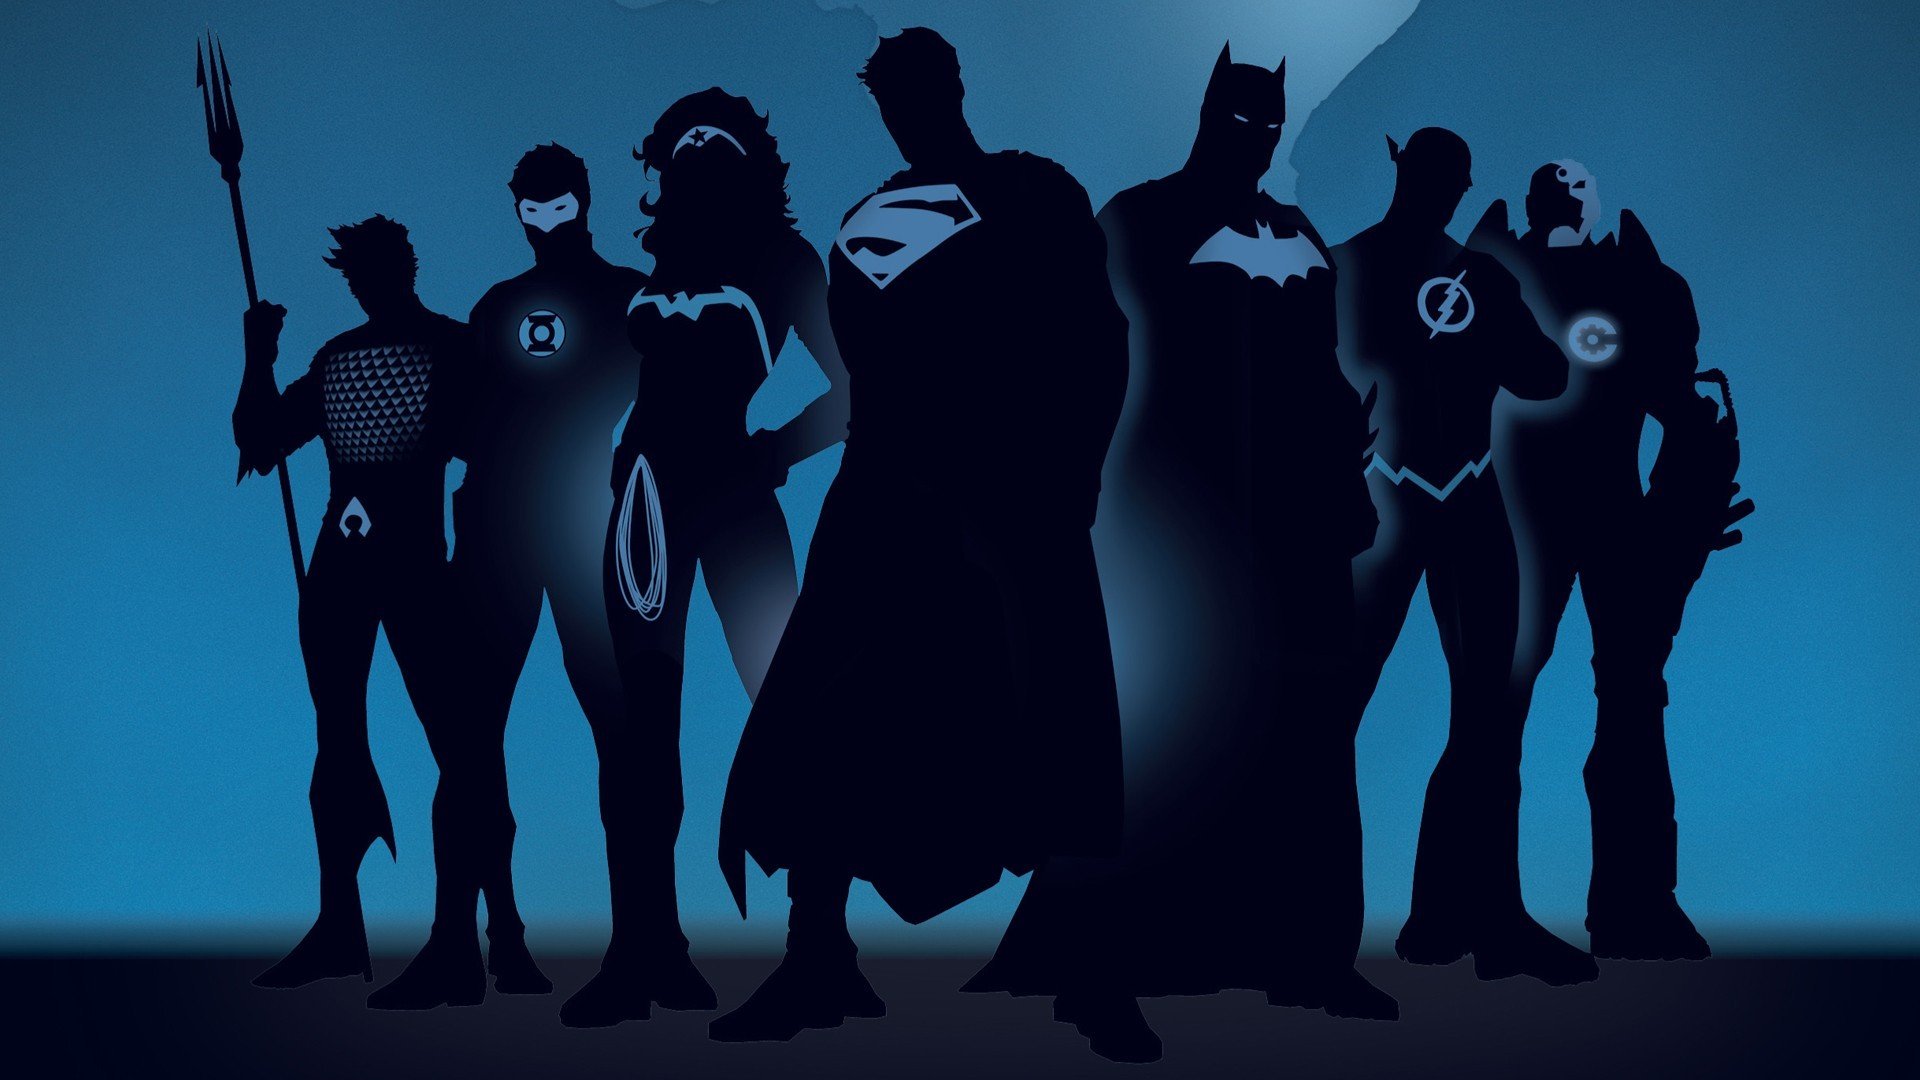 justice league silhouette